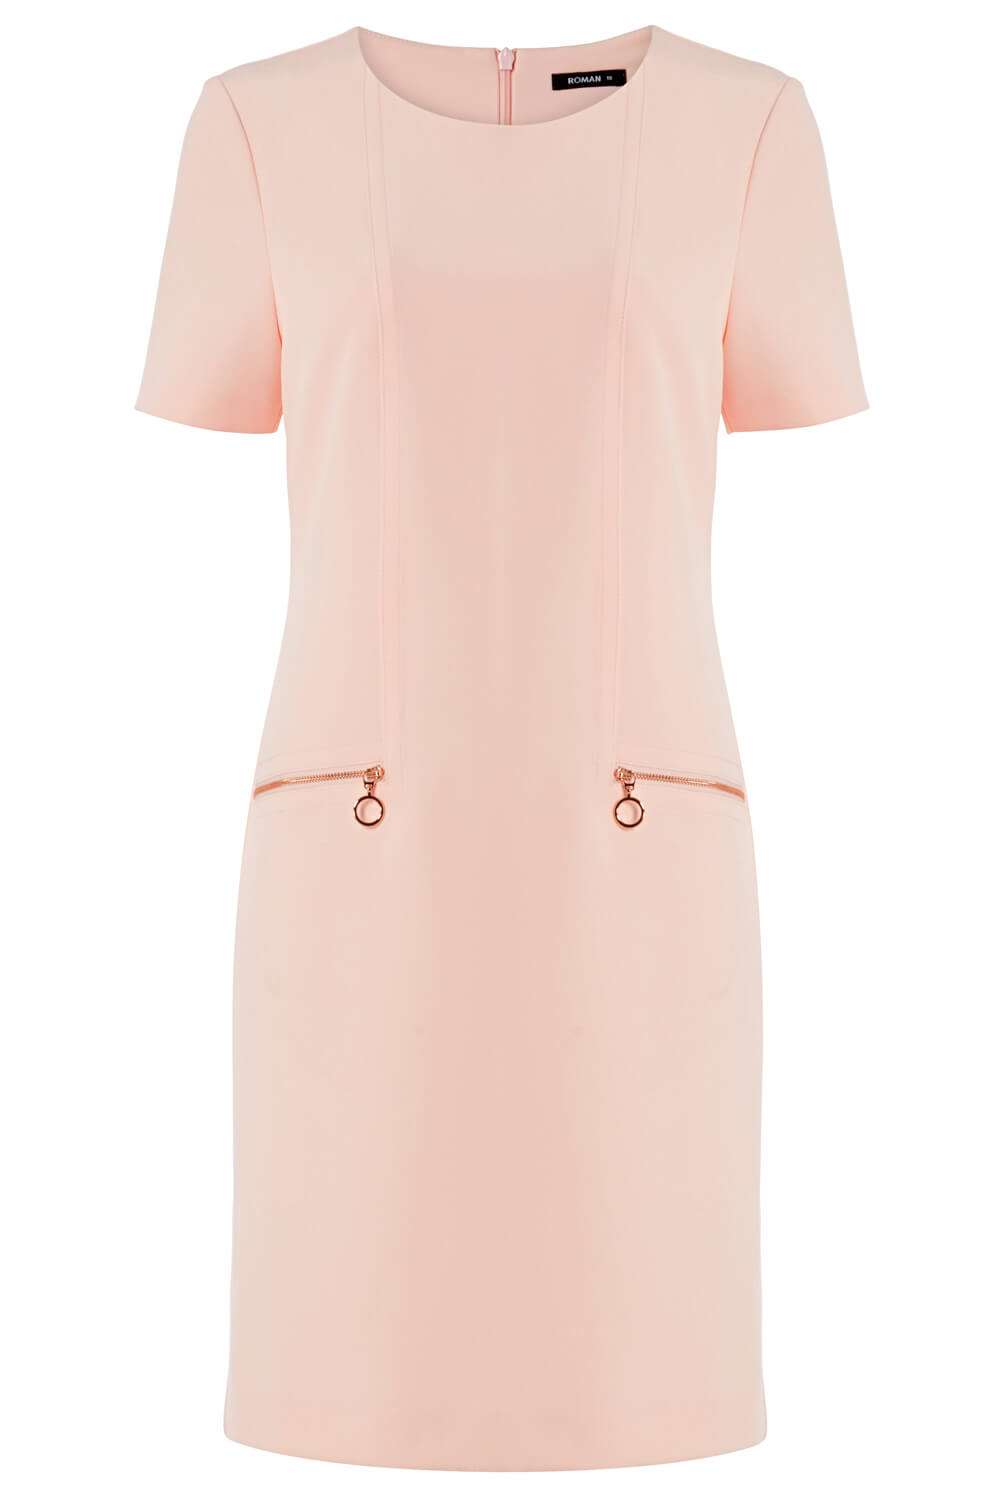 PINK Zip Pocket Shift Dress, Image 5 of 5